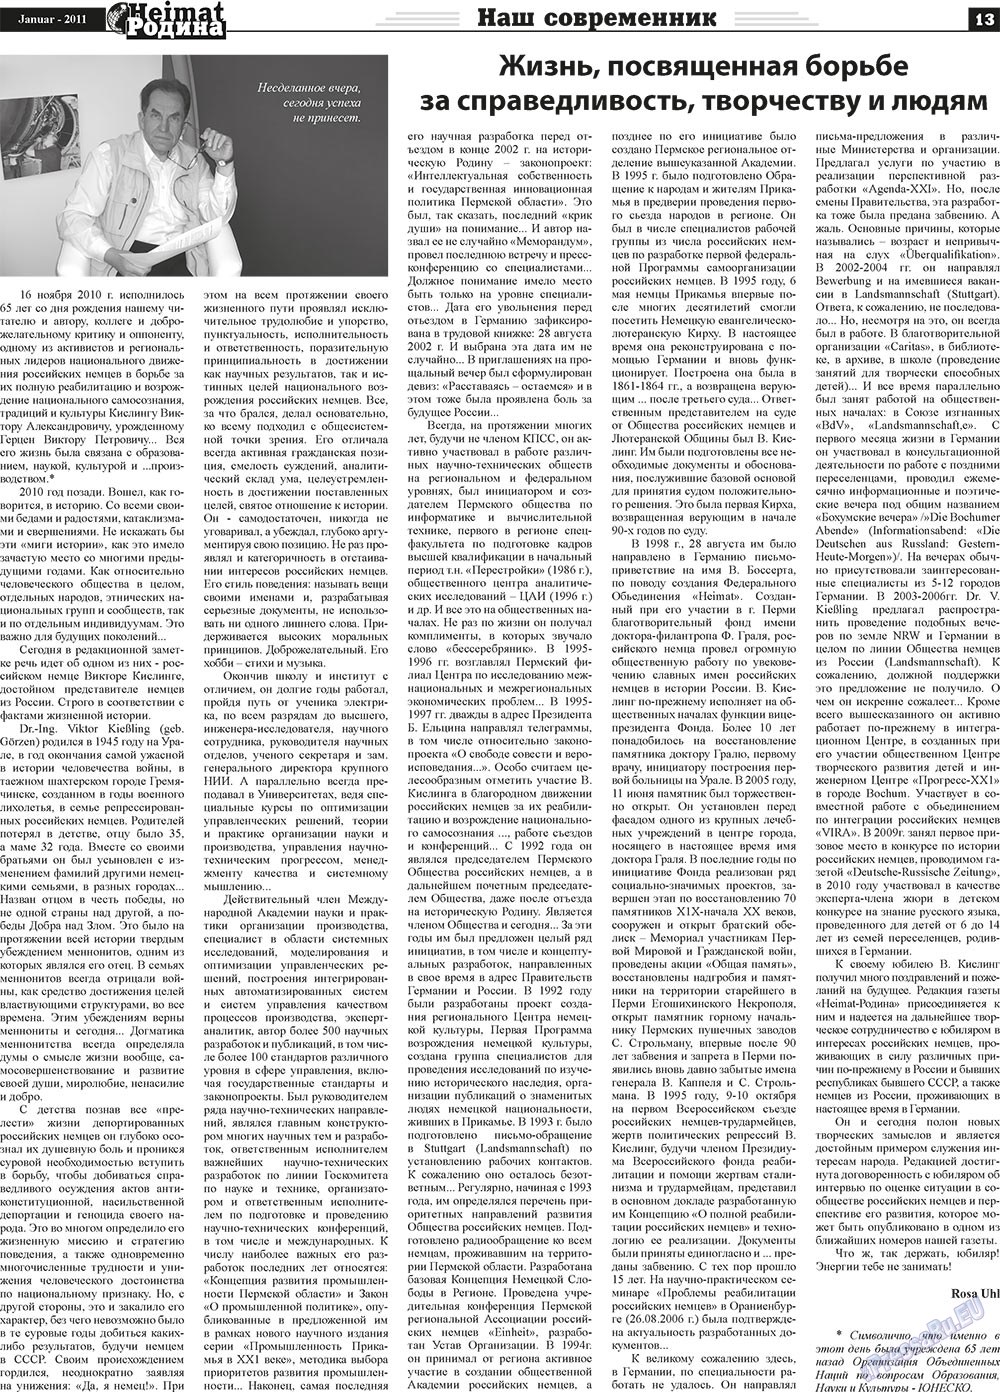 Heimat-Родина (газета). 2011 год, номер 1, стр. 13